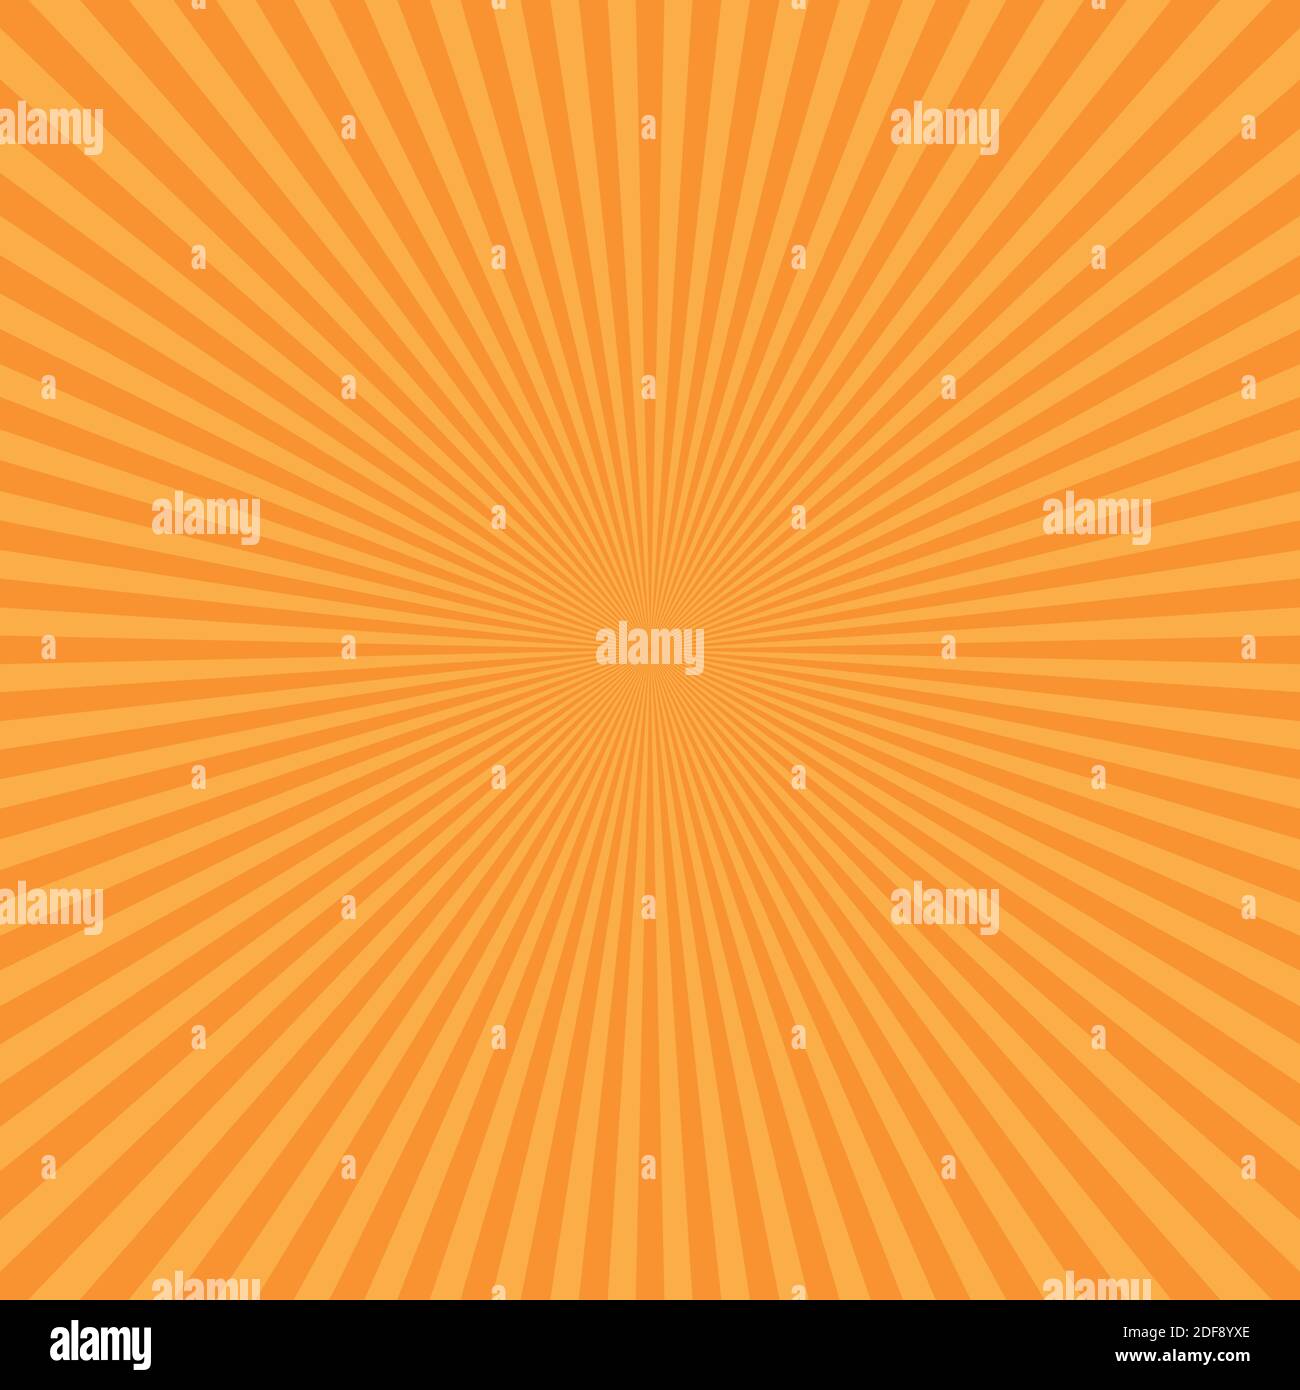 Astratto arancio sunburst backgound. Raggi vettoriali in disposizione radiale. Illustrazione Vettoriale